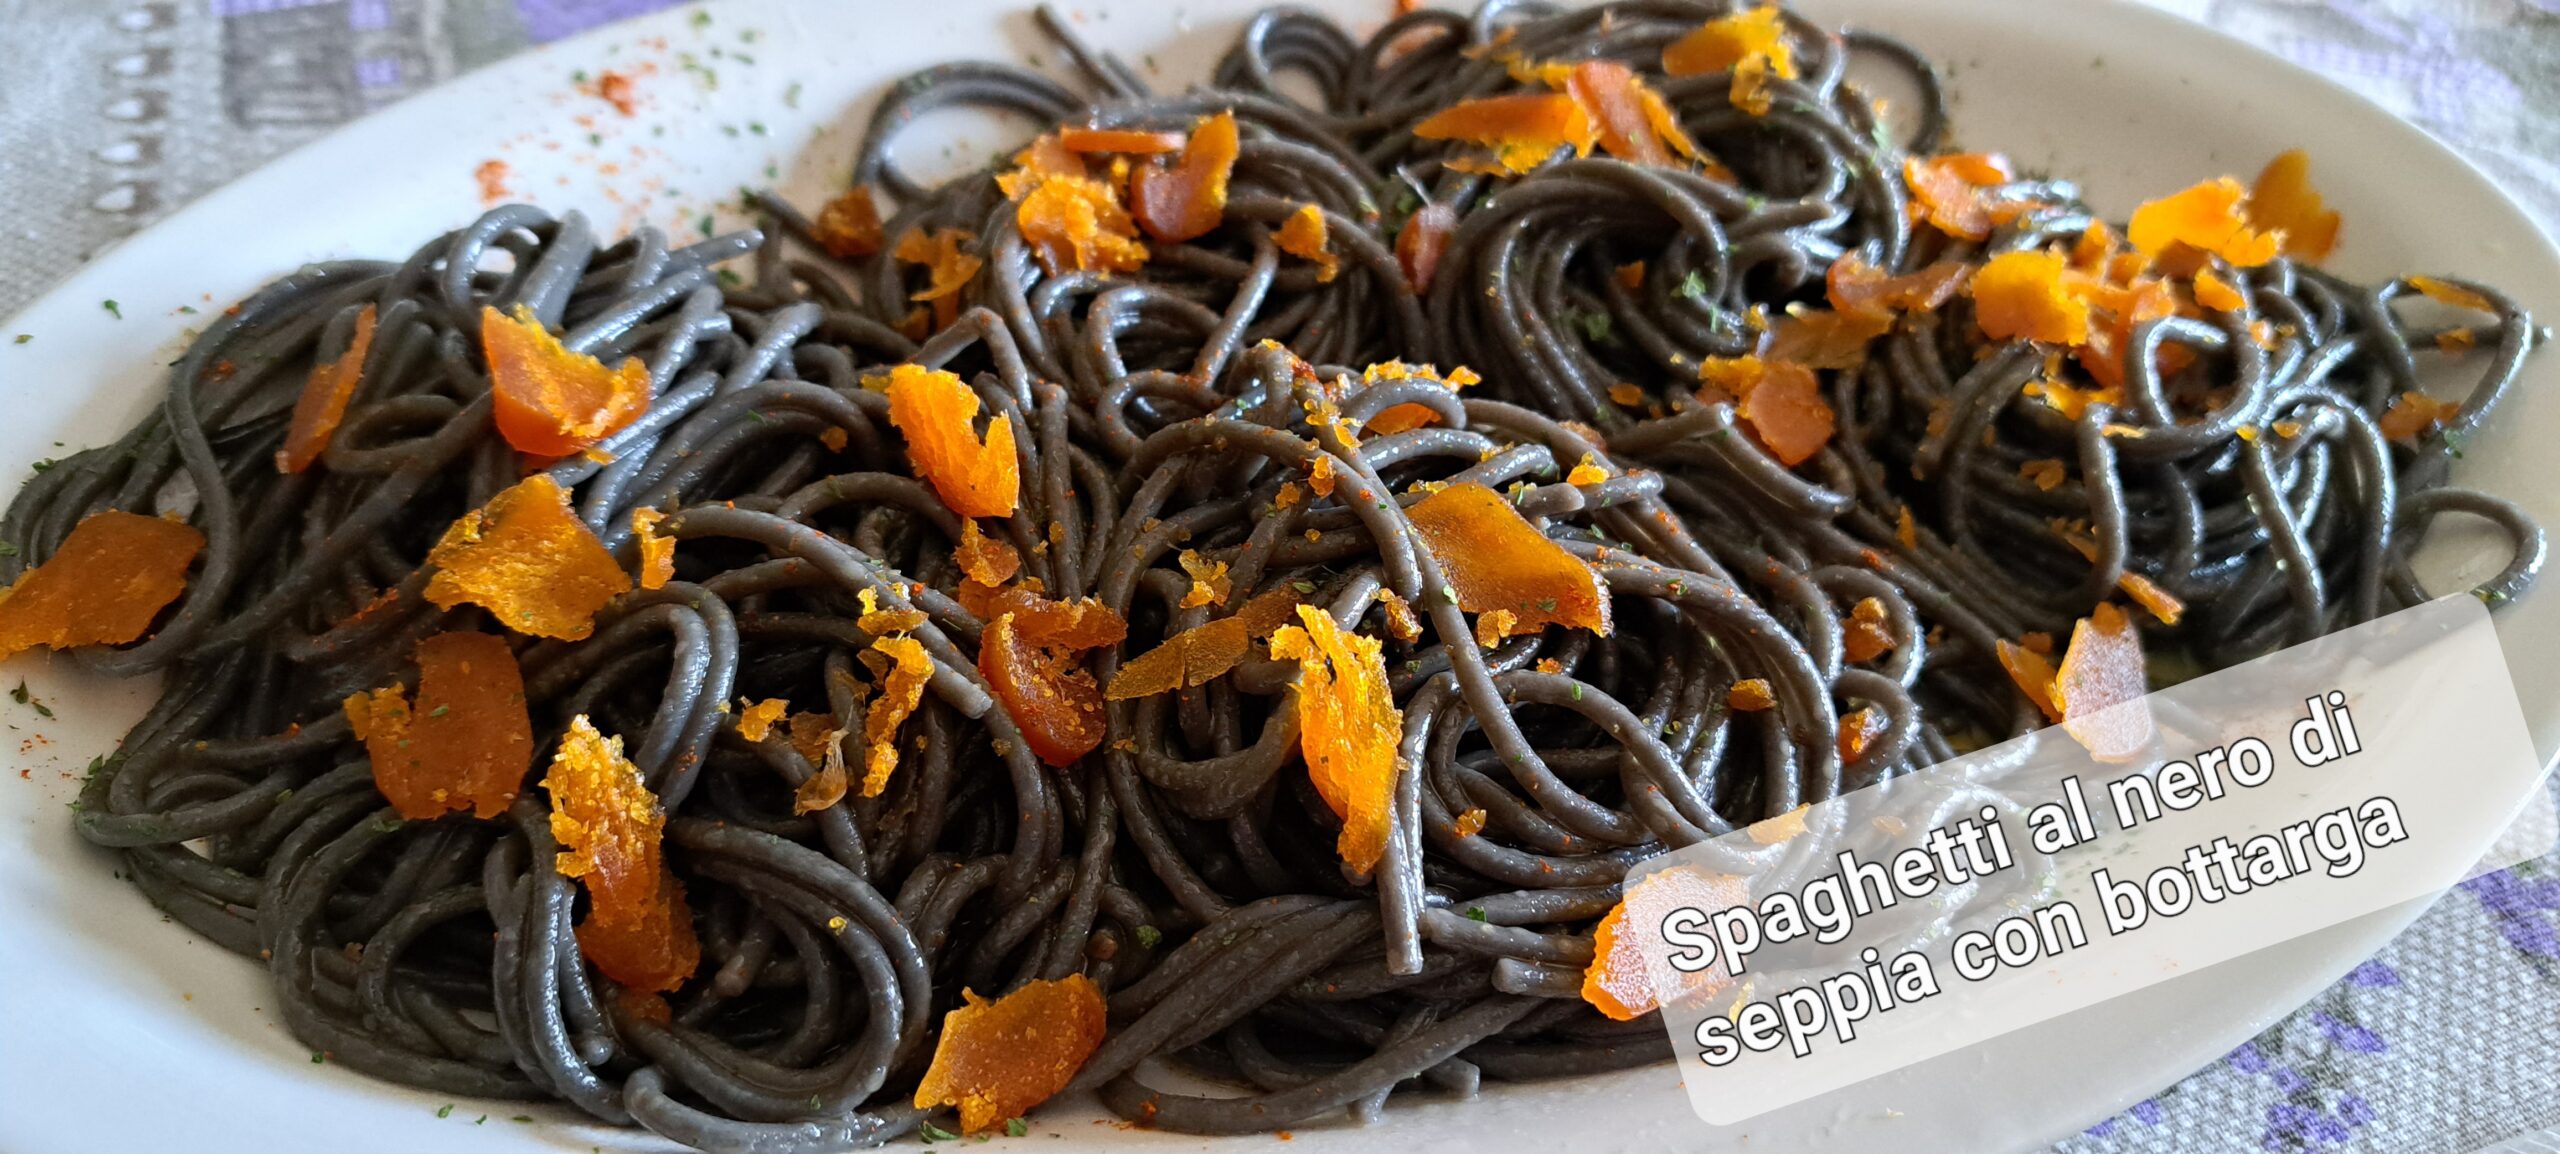 Spaghetti al nero di seppia con bottarga